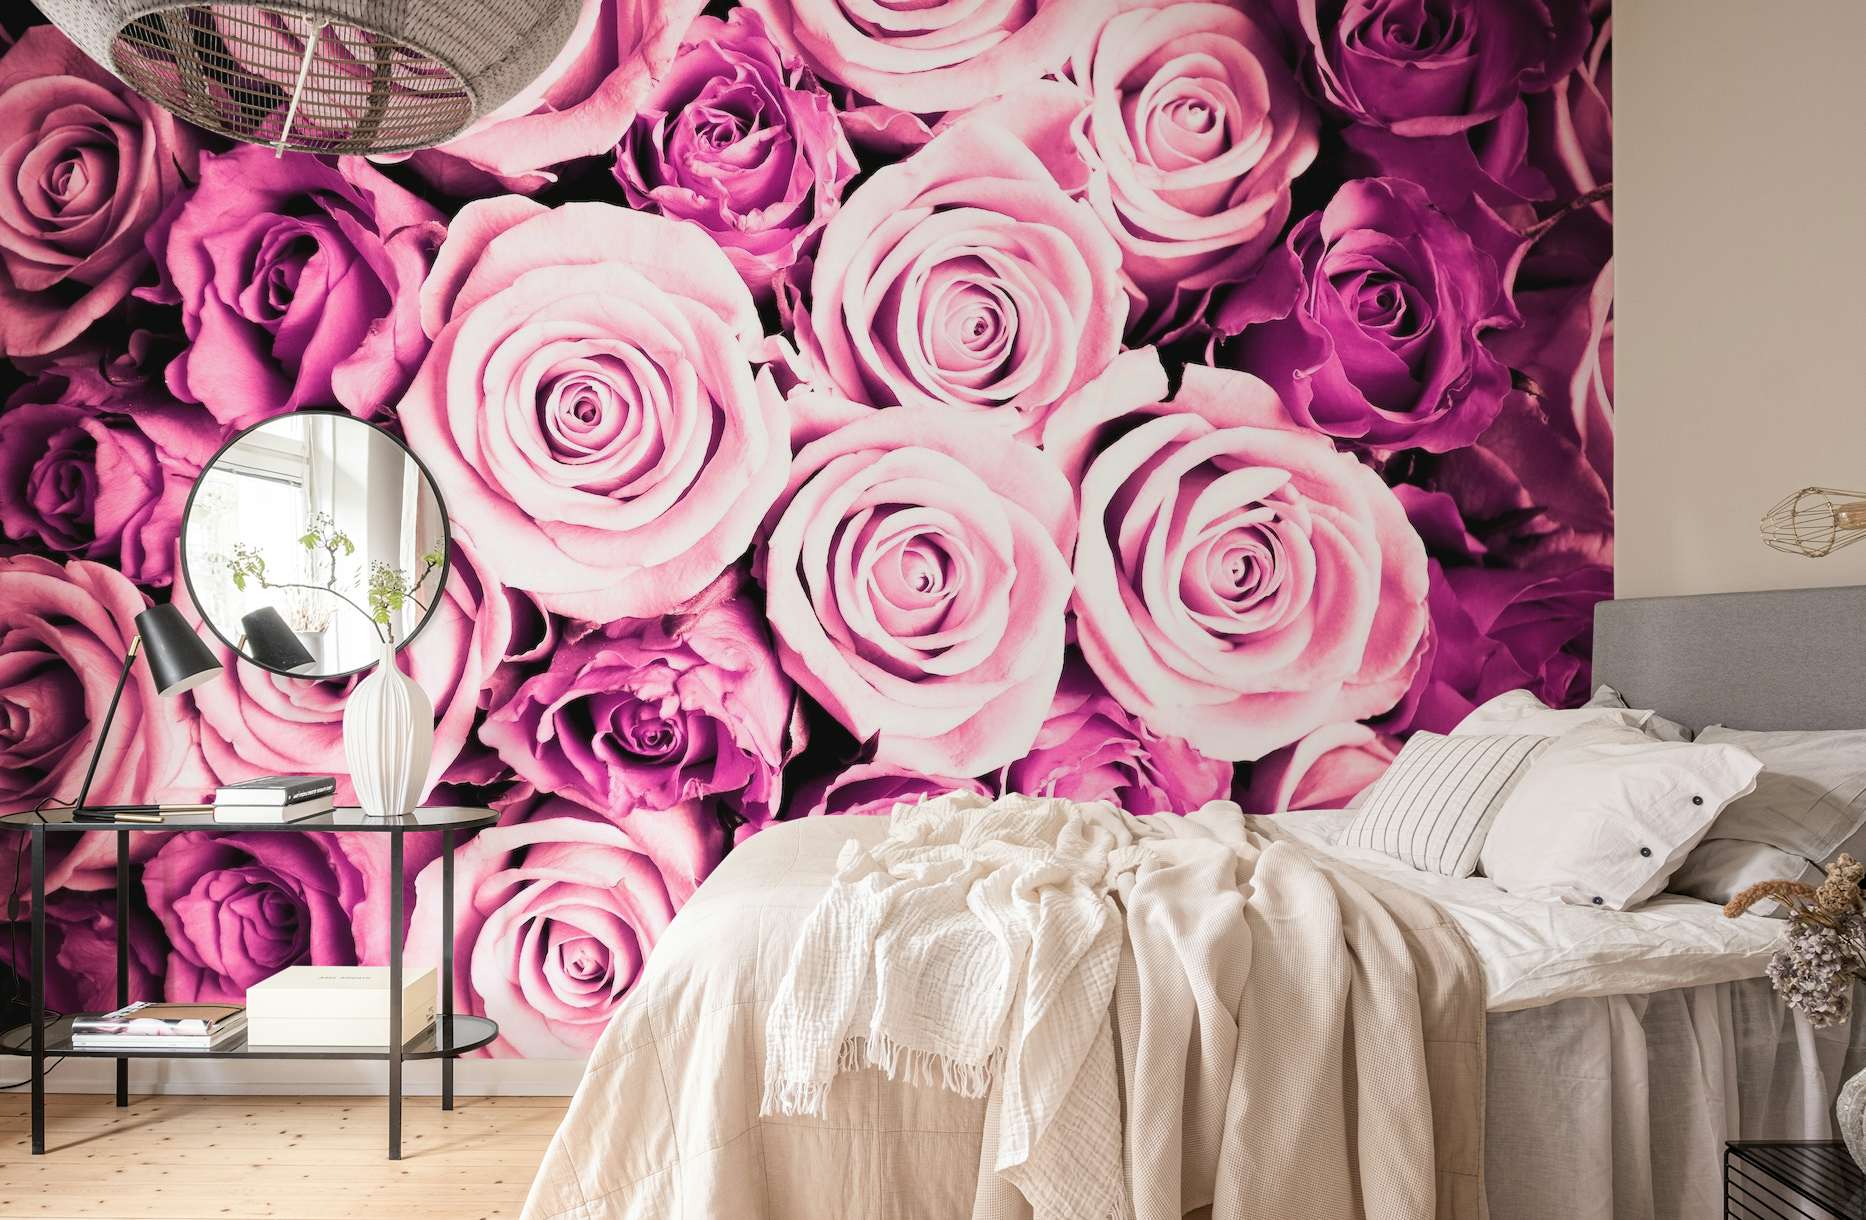 Pink roses wallpaper